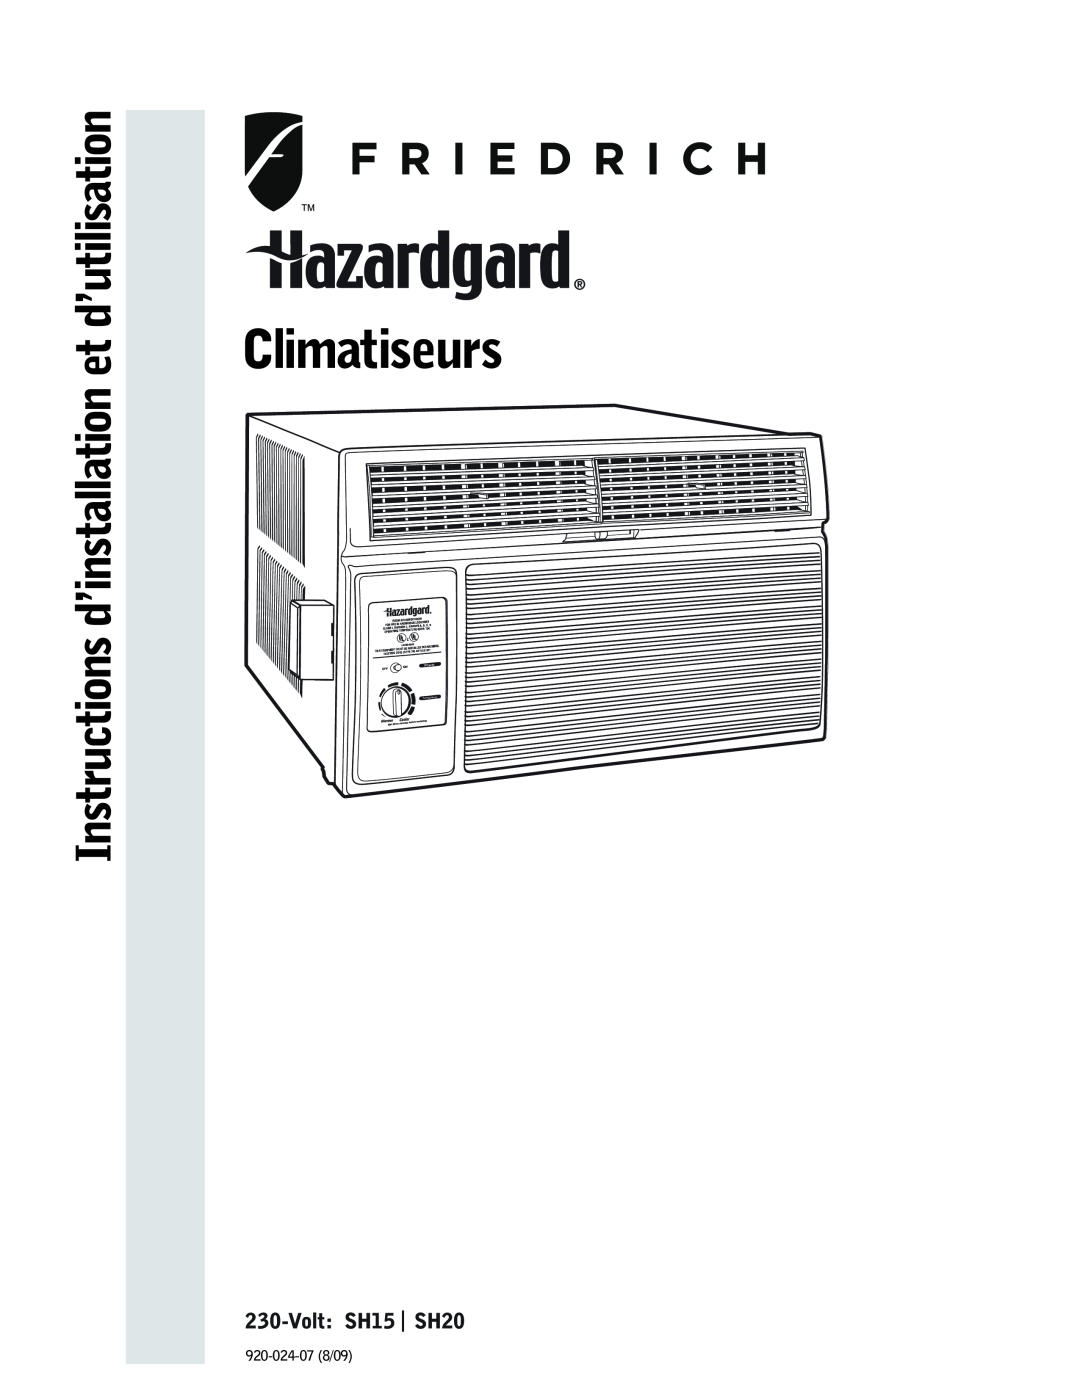 Friedrich VOLT:SH15 | SH20, Climatiseurs, Instructions D’Installation Et D’Utilisation, Power, Temperature 